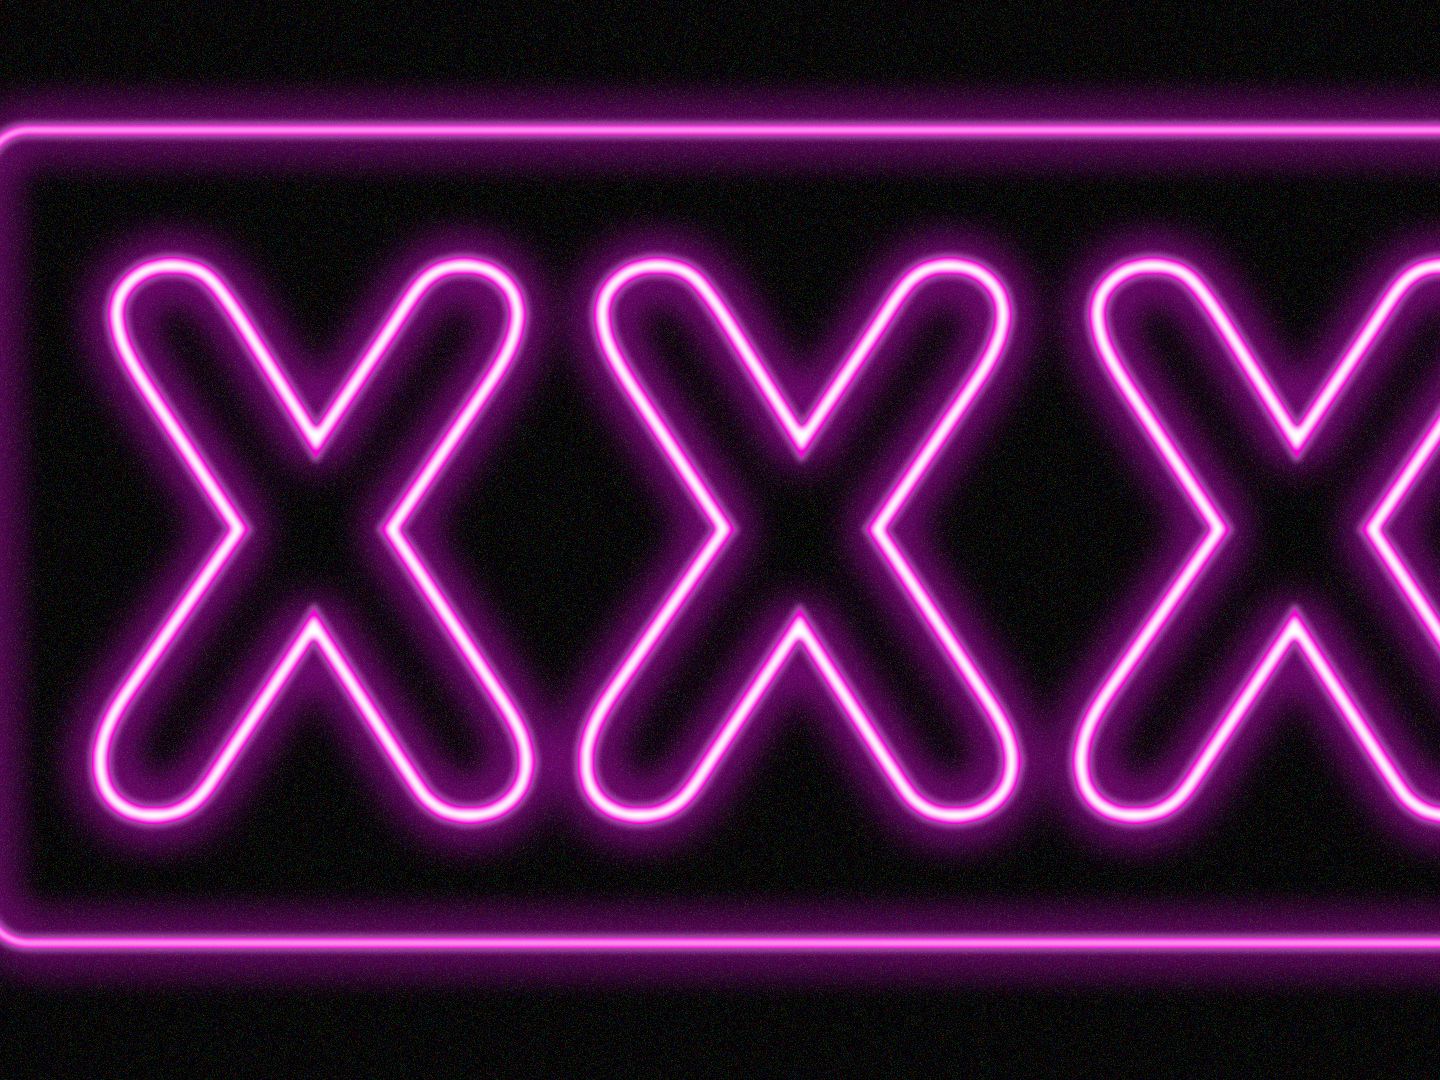 Www Xxx15 - New Pornhub owner has plans beyond porn